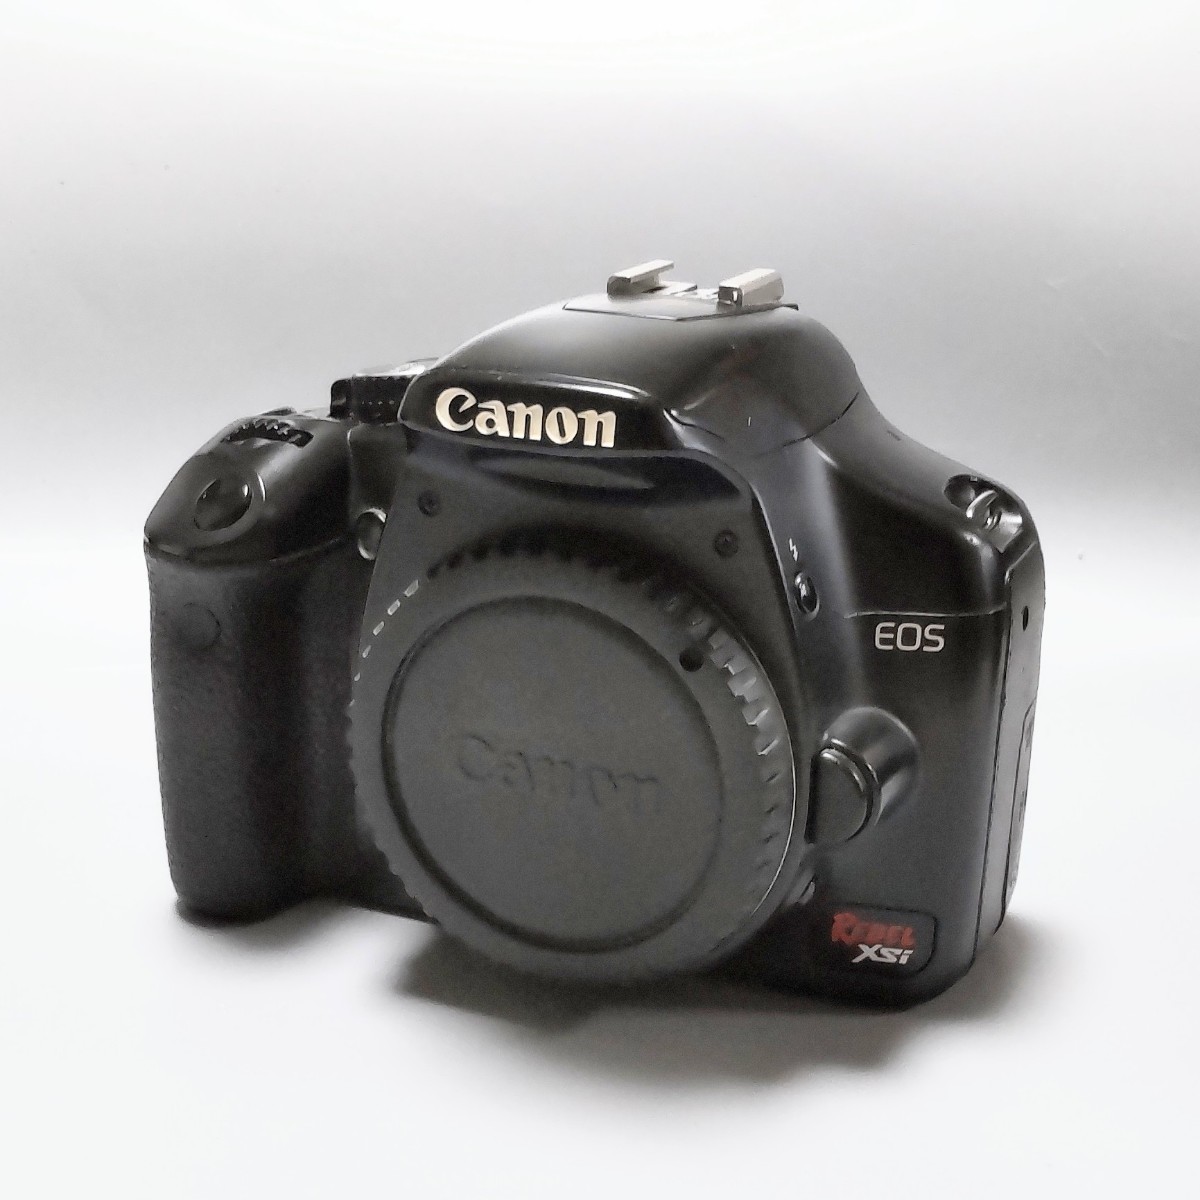 カメラ デジタルカメラ Canon EOS DIGITAL REVEL XSi【動作確認済】☆超希少なEOS海外 